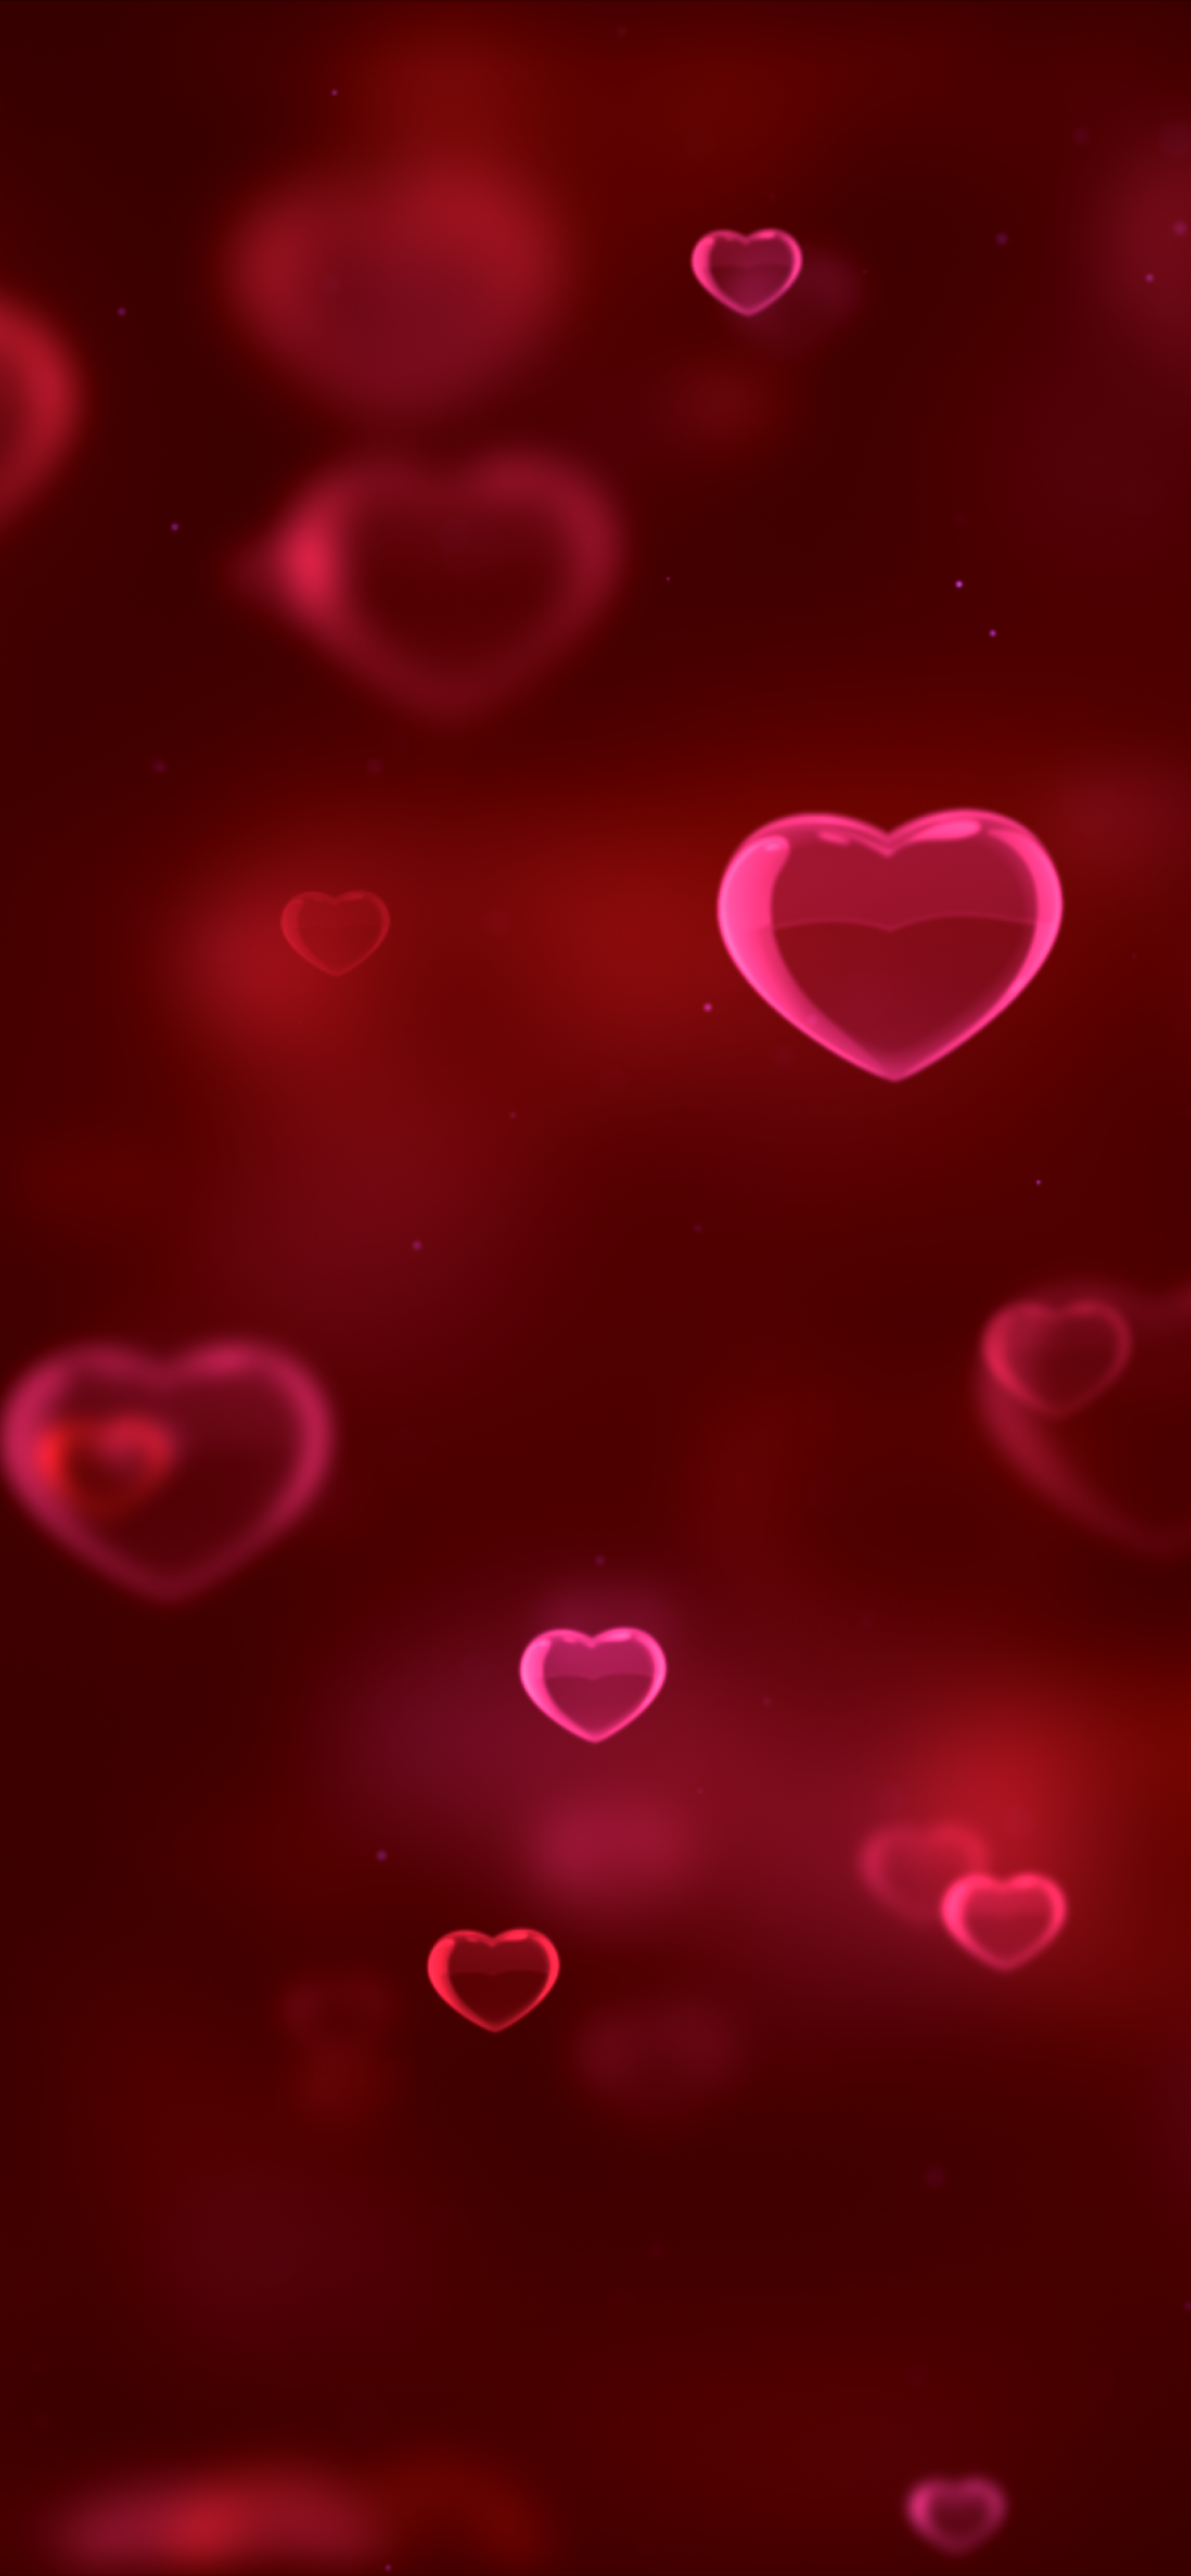 Thật tuyệt vời khi có một bức ảnh nền đầy màu sắc và ấn tượng trên iPhone của bạn! Red Hearts Wallpaper chắc chắn sẽ đem lại cho bạn những cảm xúc tuyệt vời với hình ảnh những trái tim đỏ rực trong không gian đầy lãng mạn và độc đáo. 